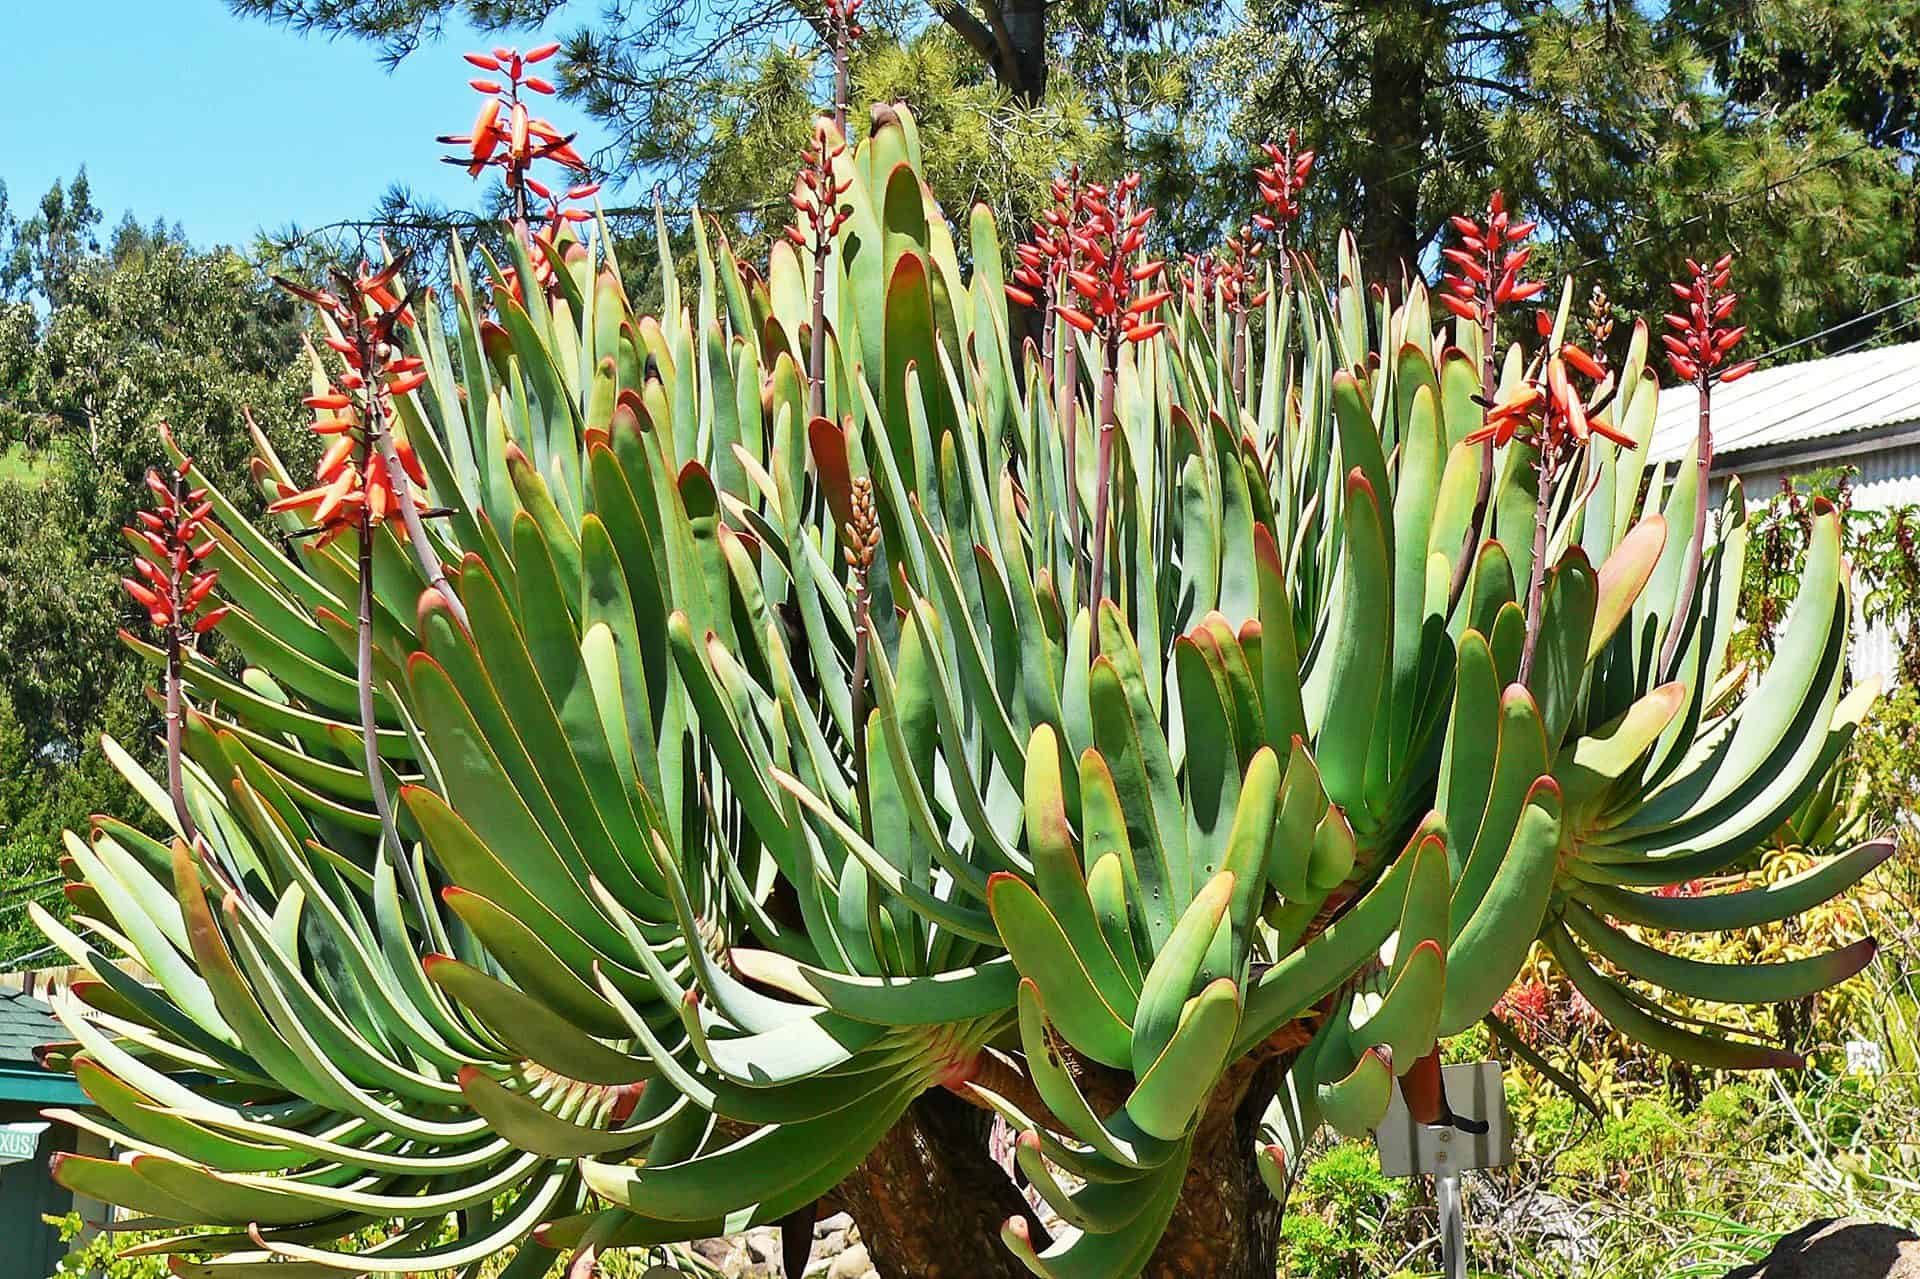 Aloe plicatilis